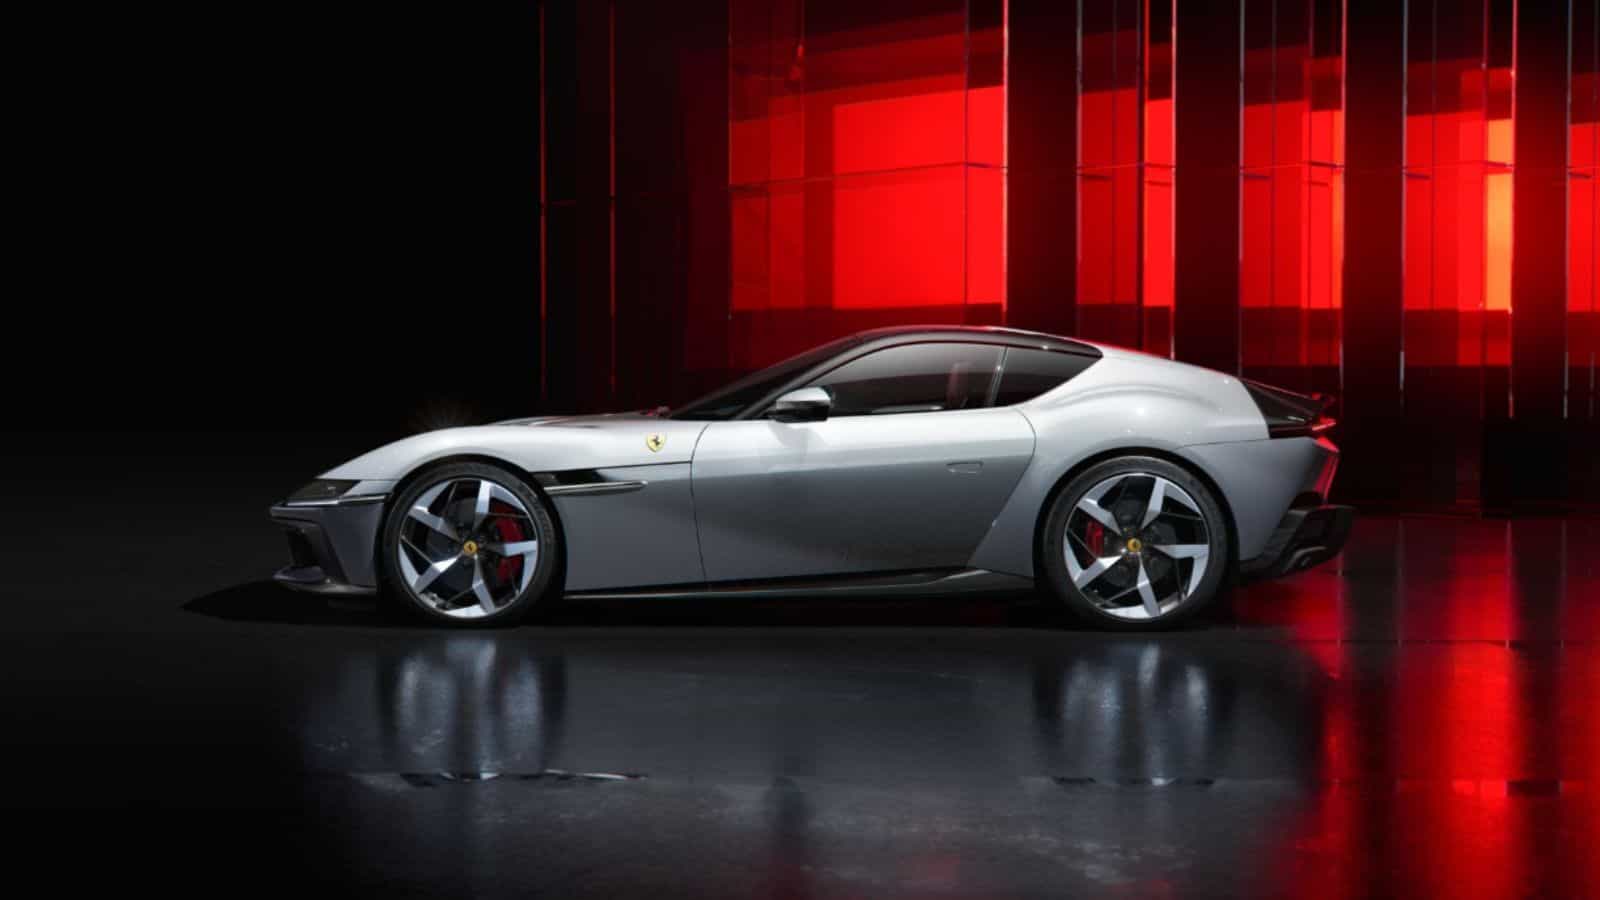 Ferrari 12Cilindri è realtà: ecco la nuova supercar con motore V12